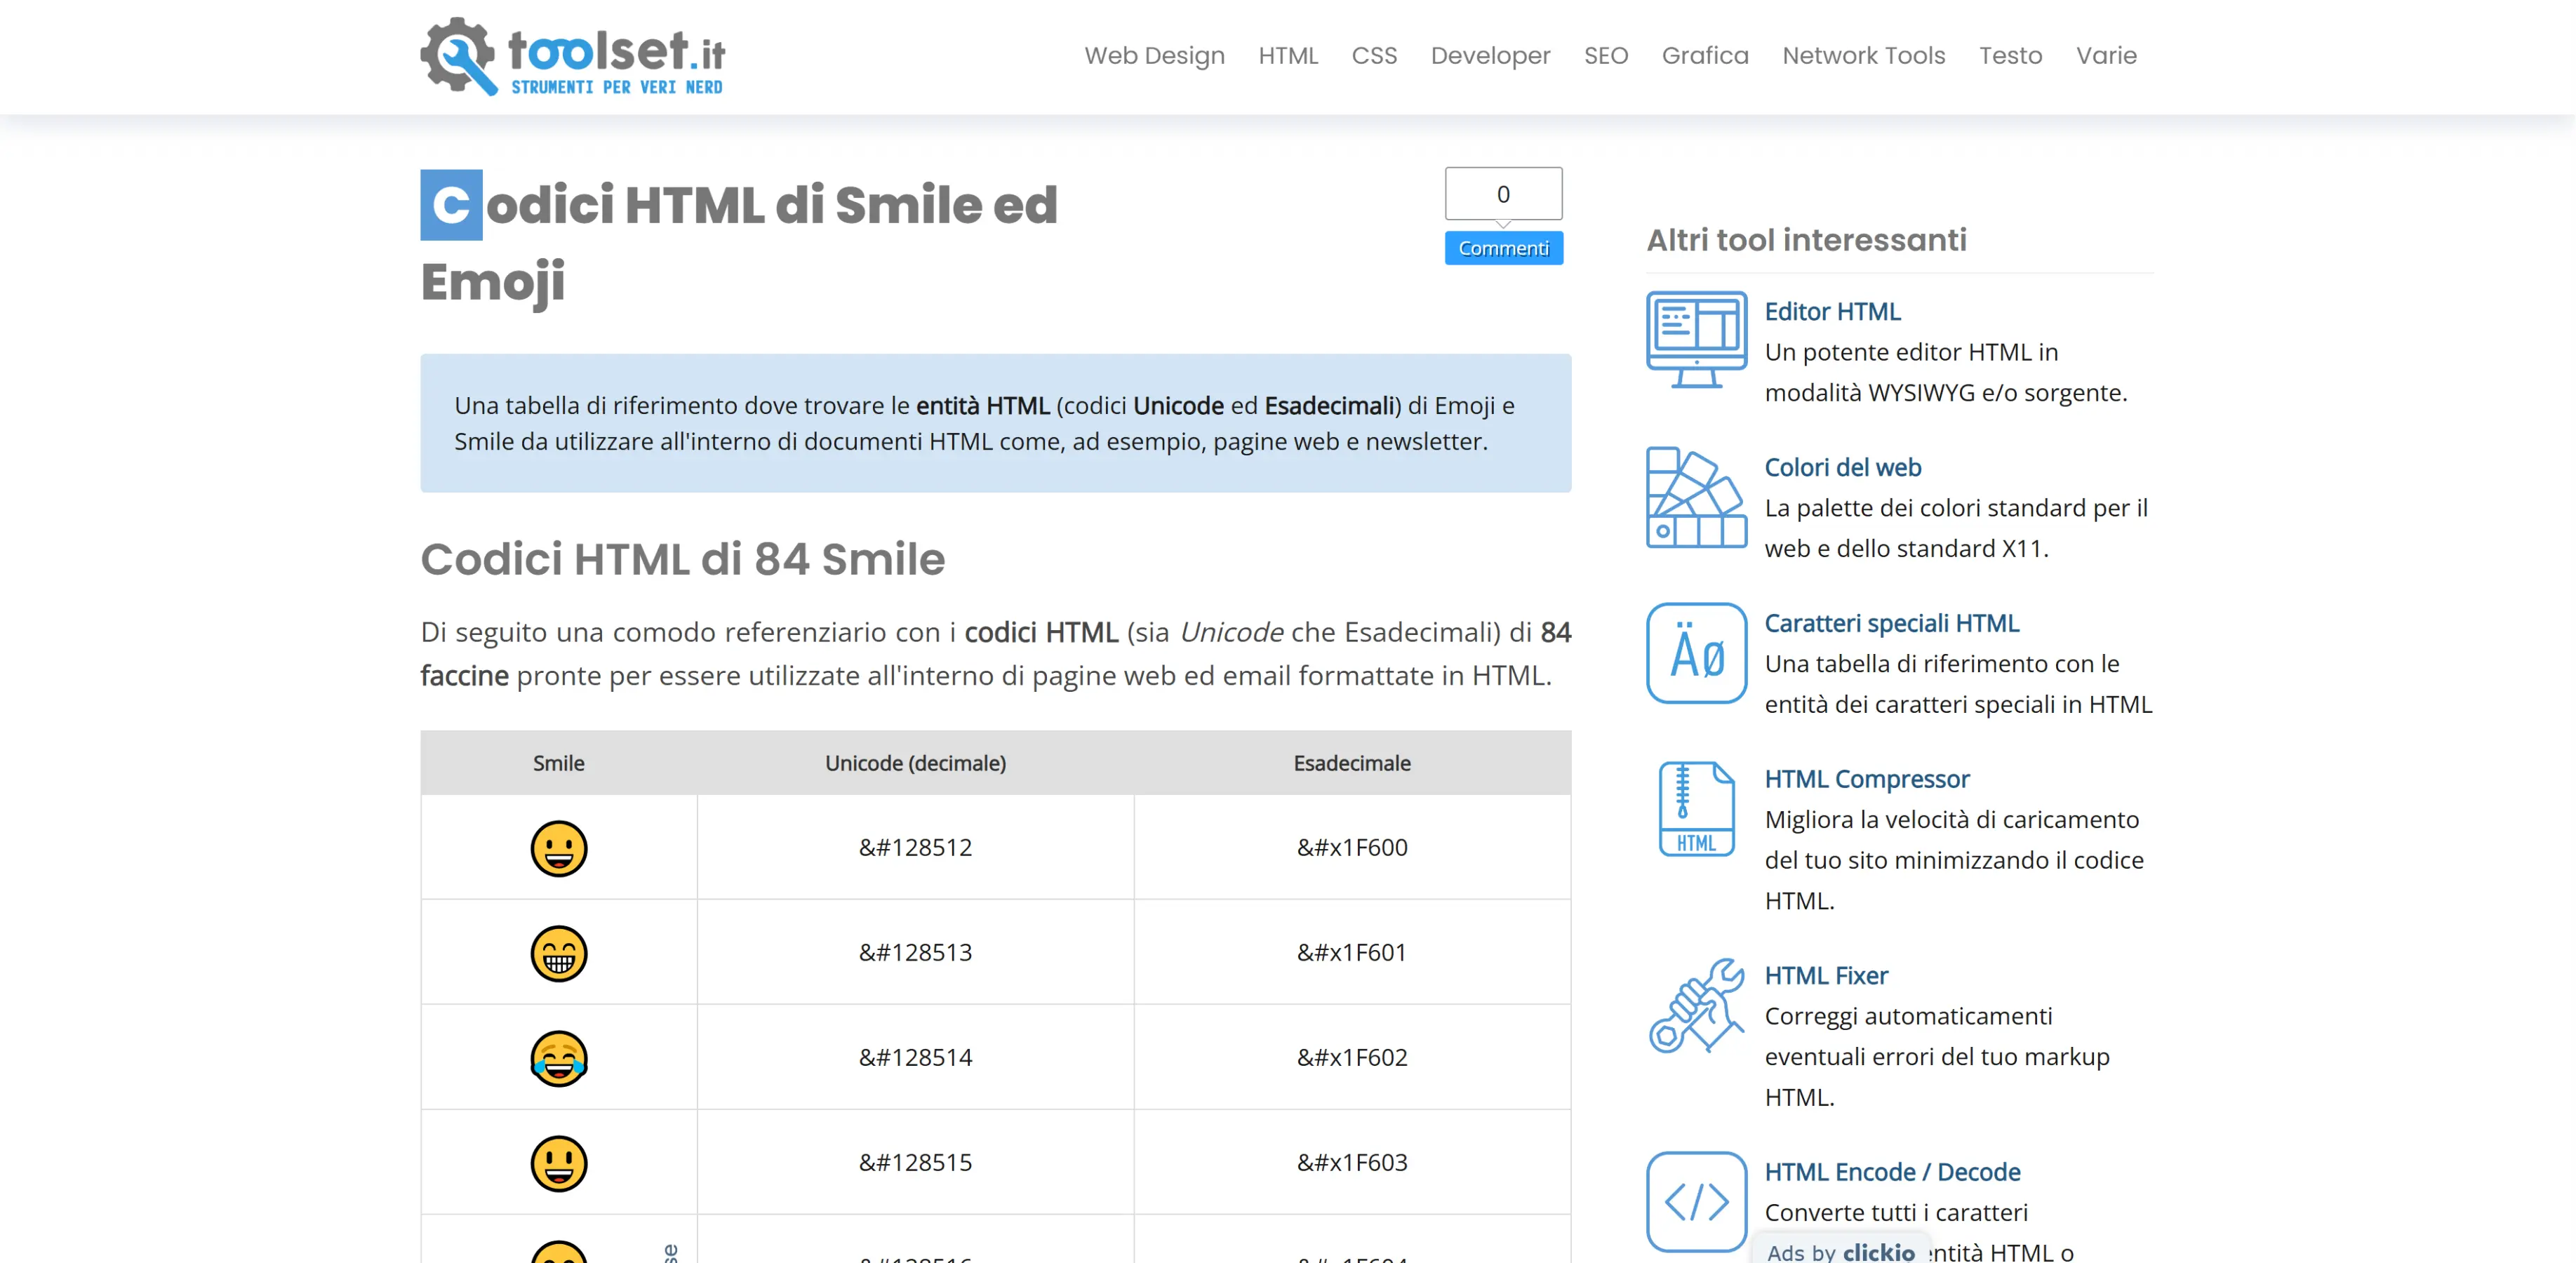 Codici HTML di Smile ed Emoji